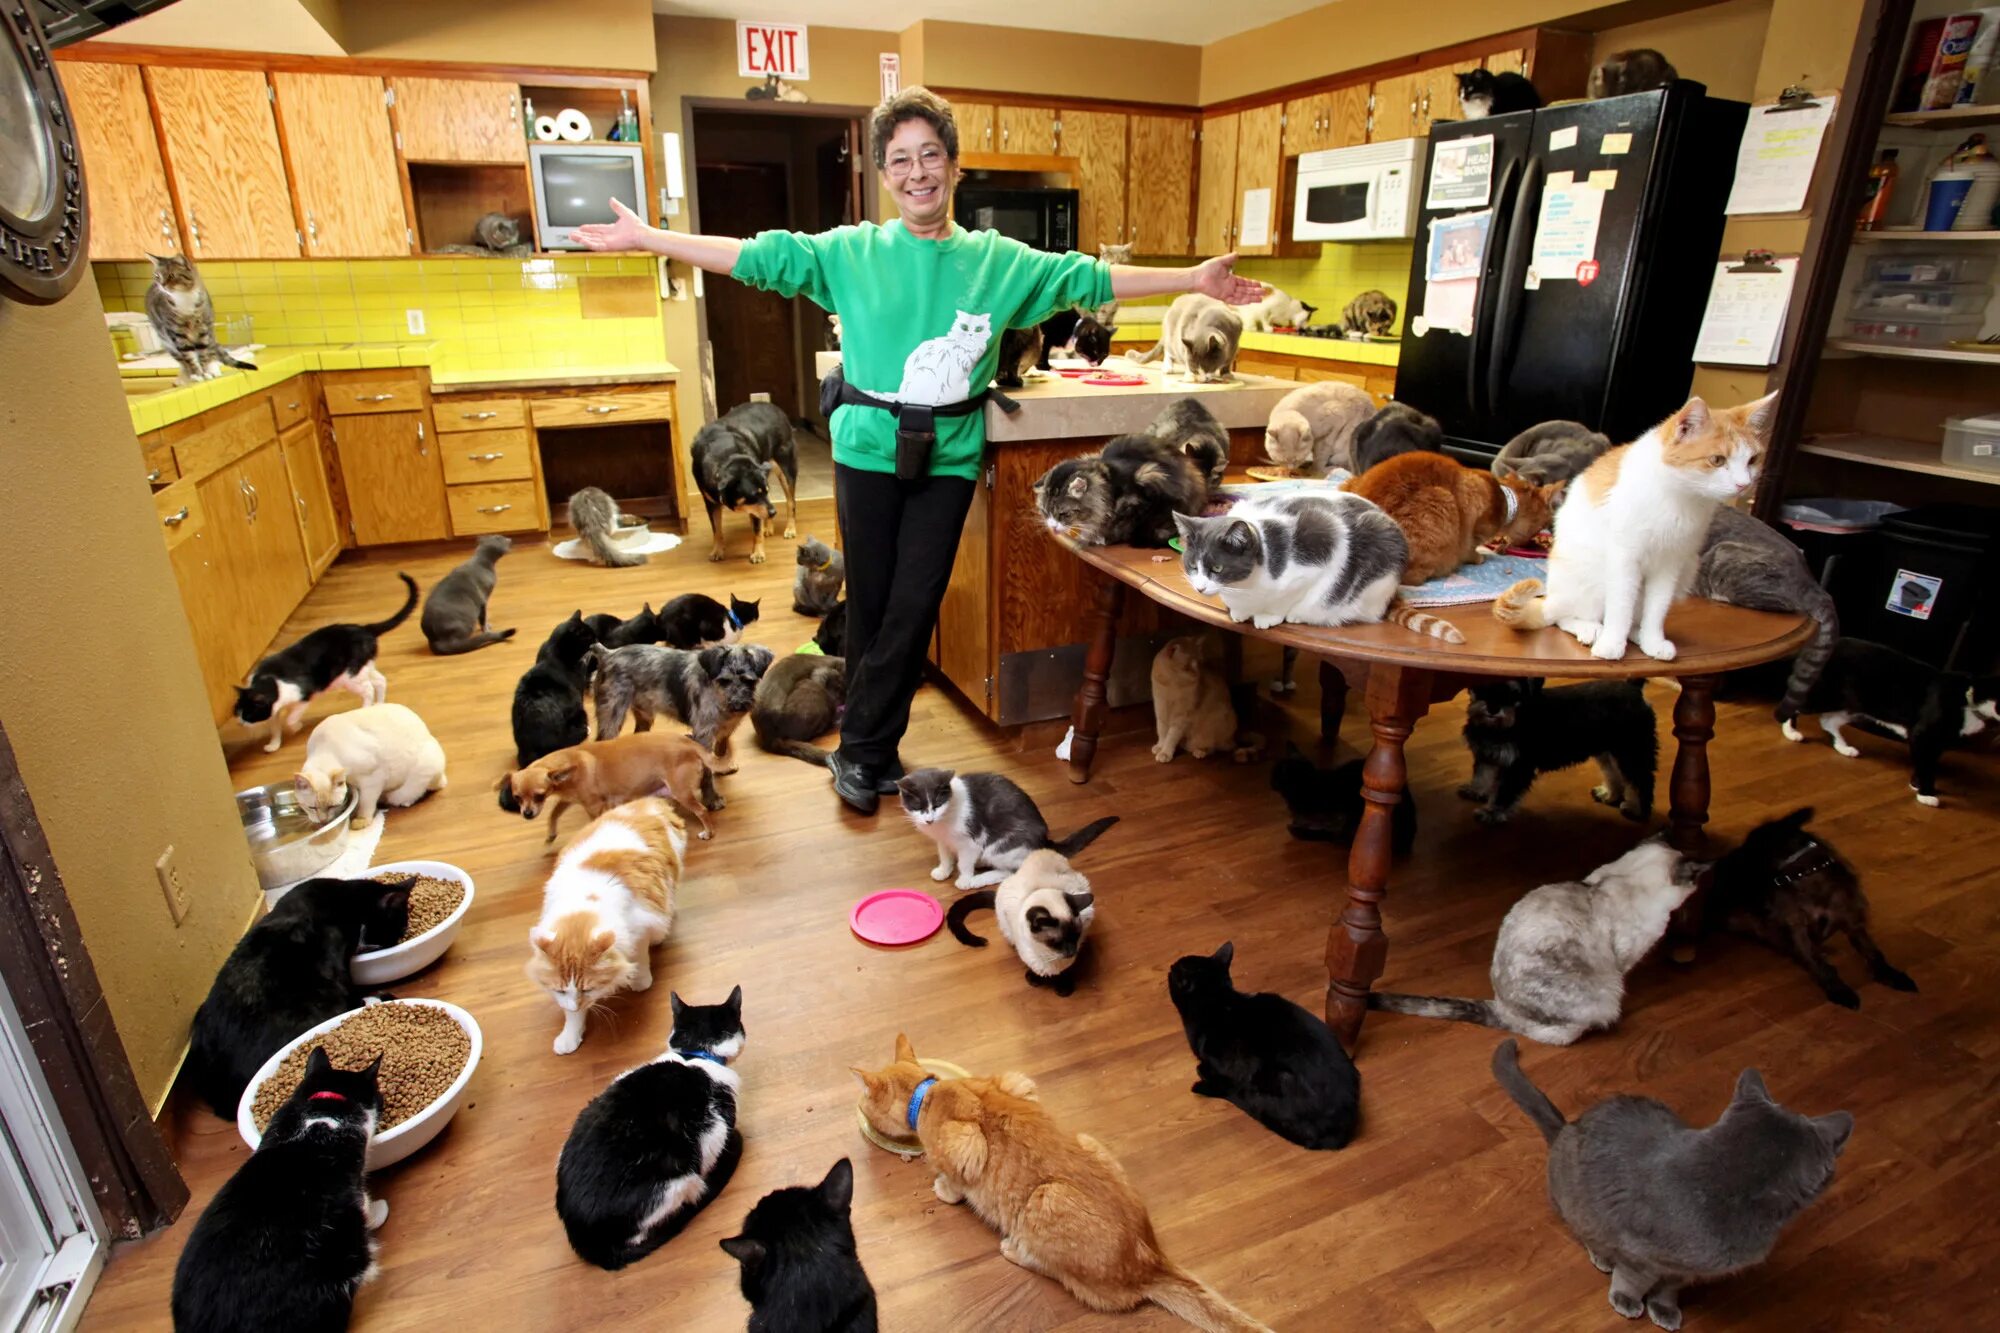 Домашние животные в доме. Куча кошек в квартире. Домашиеживотные в квартире. Много животных в квартире.